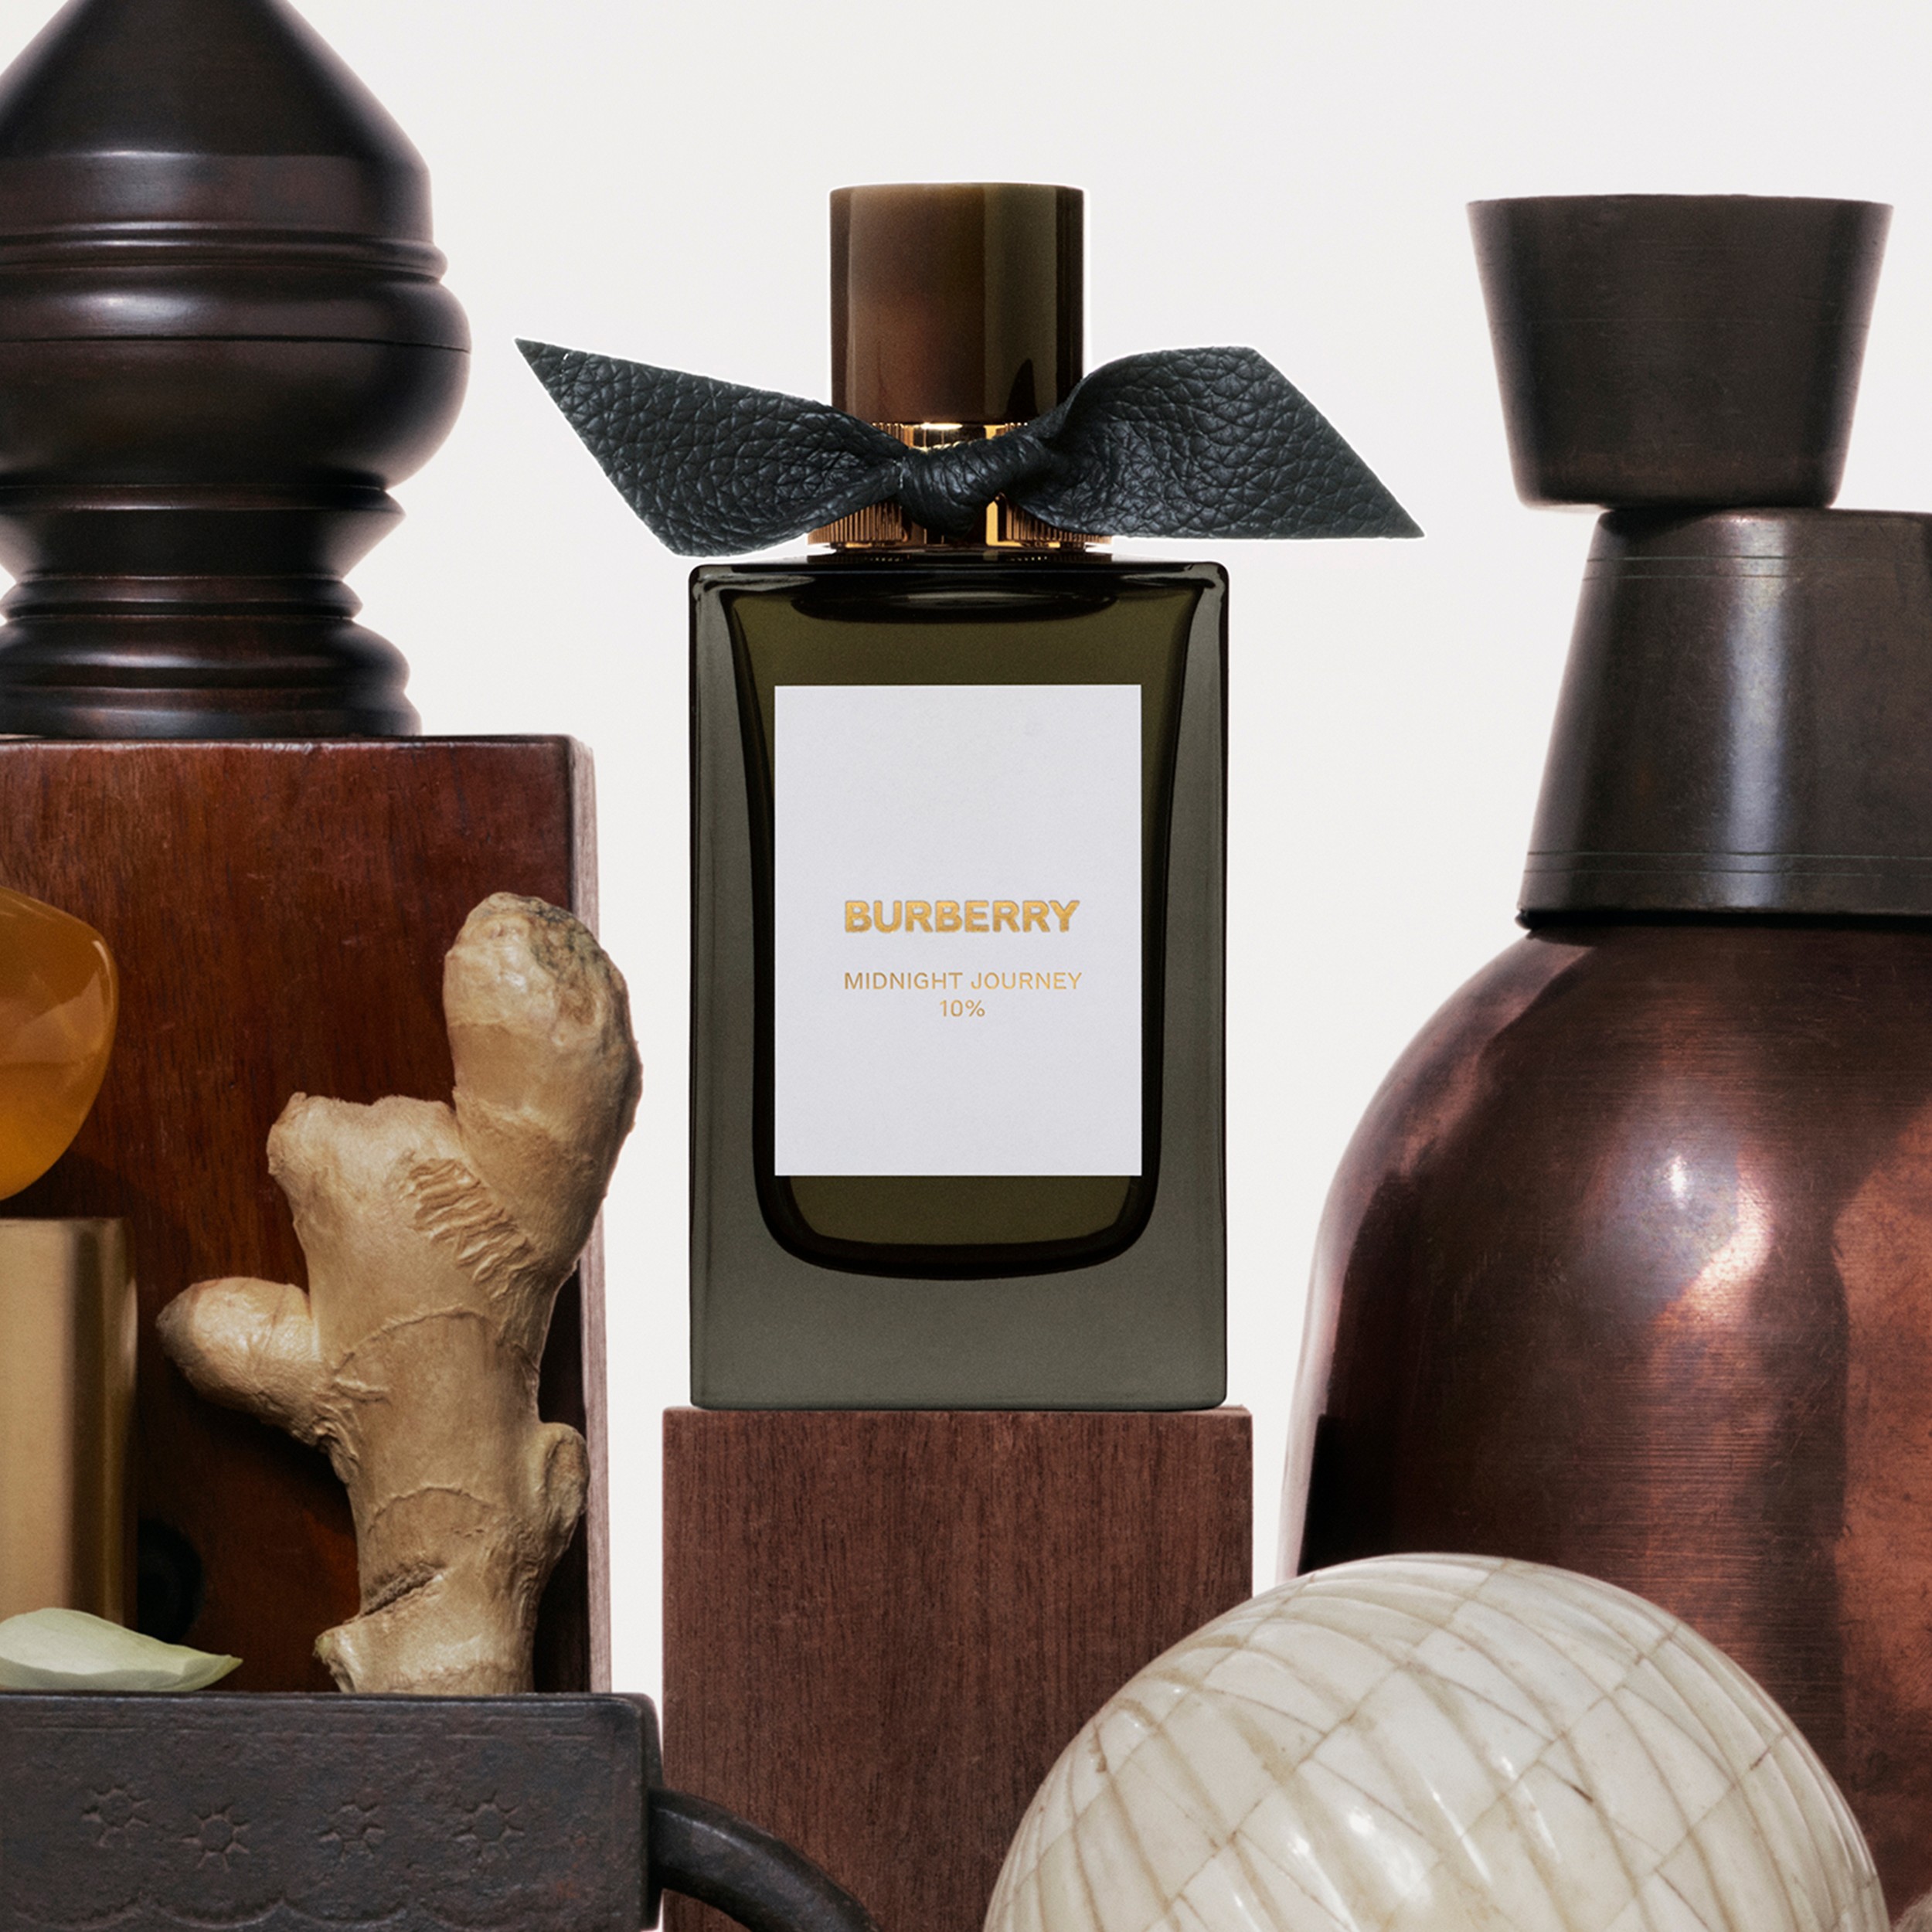 Burberry Signatures Eau de Parfum de 100 ml - Midnight Journey | Burberry® oficial - 2